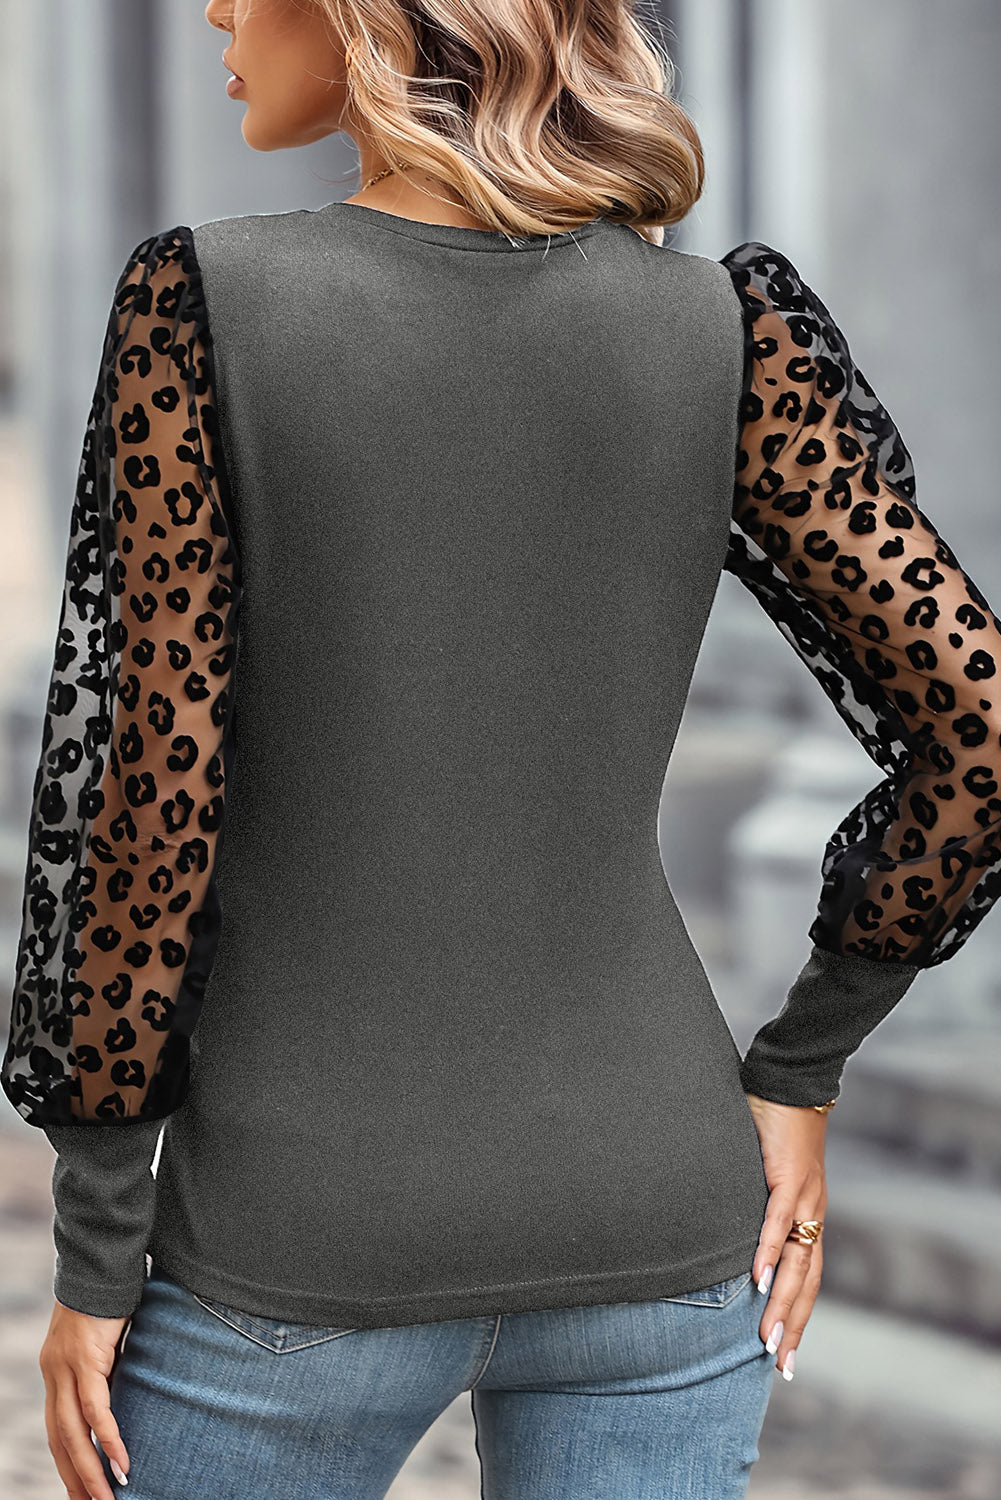 Srednje siva leopard mrežasta majica s puf rukavima uskom kroju